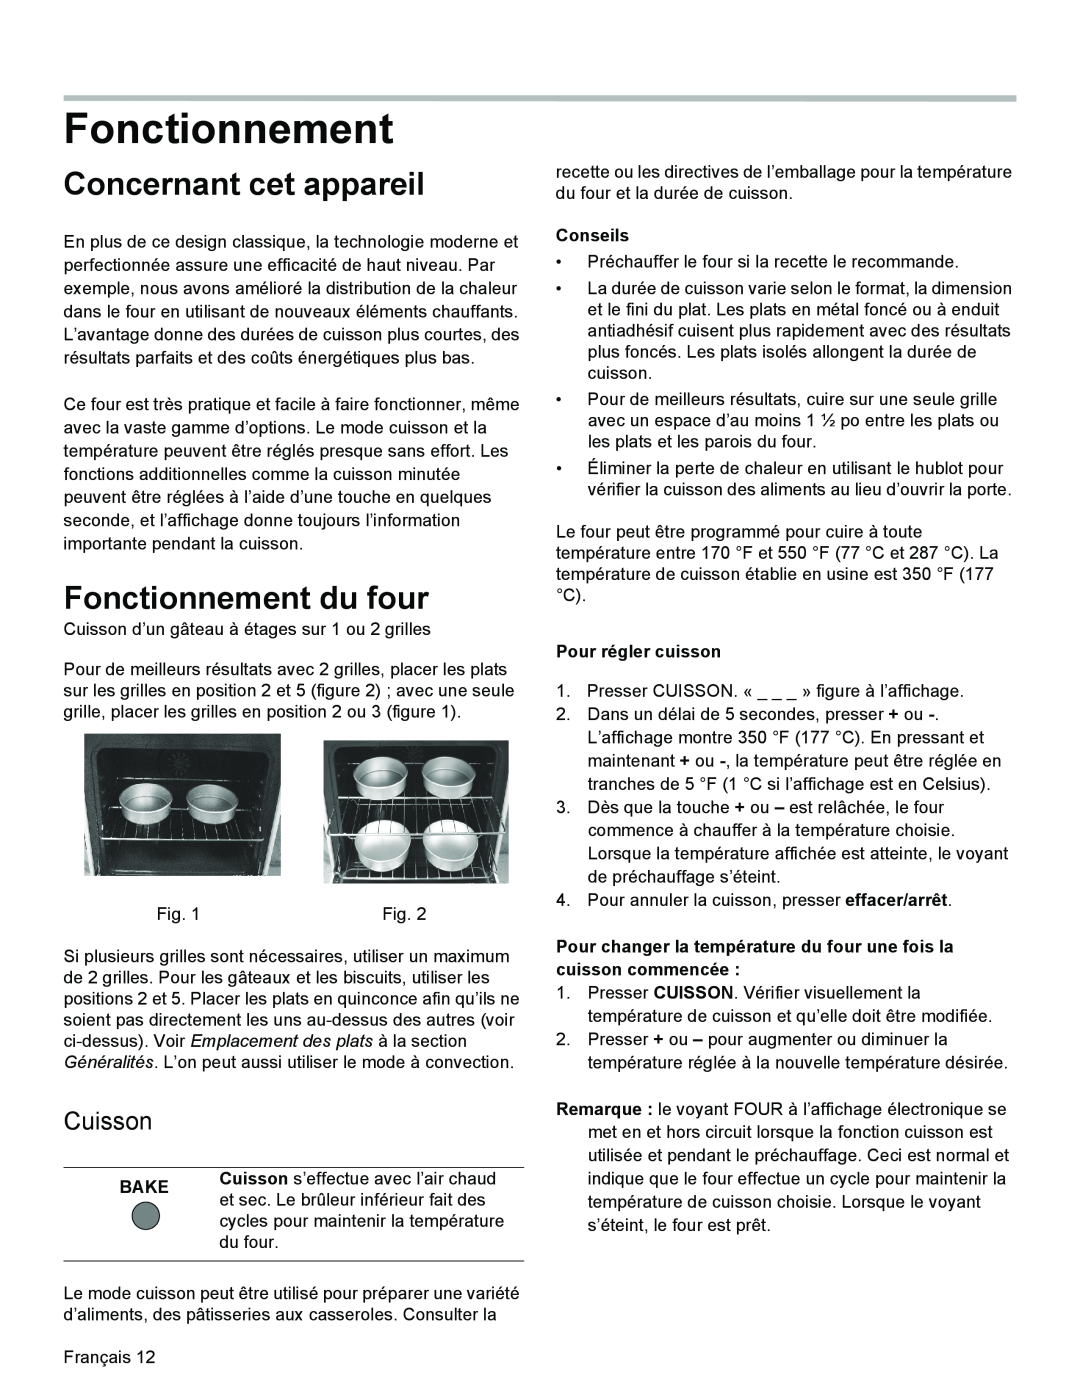 Bosch Appliances HGS3023UC manual Concernant cet appareil, Fonctionnement du four, Cuisson, Bake, Conseils 